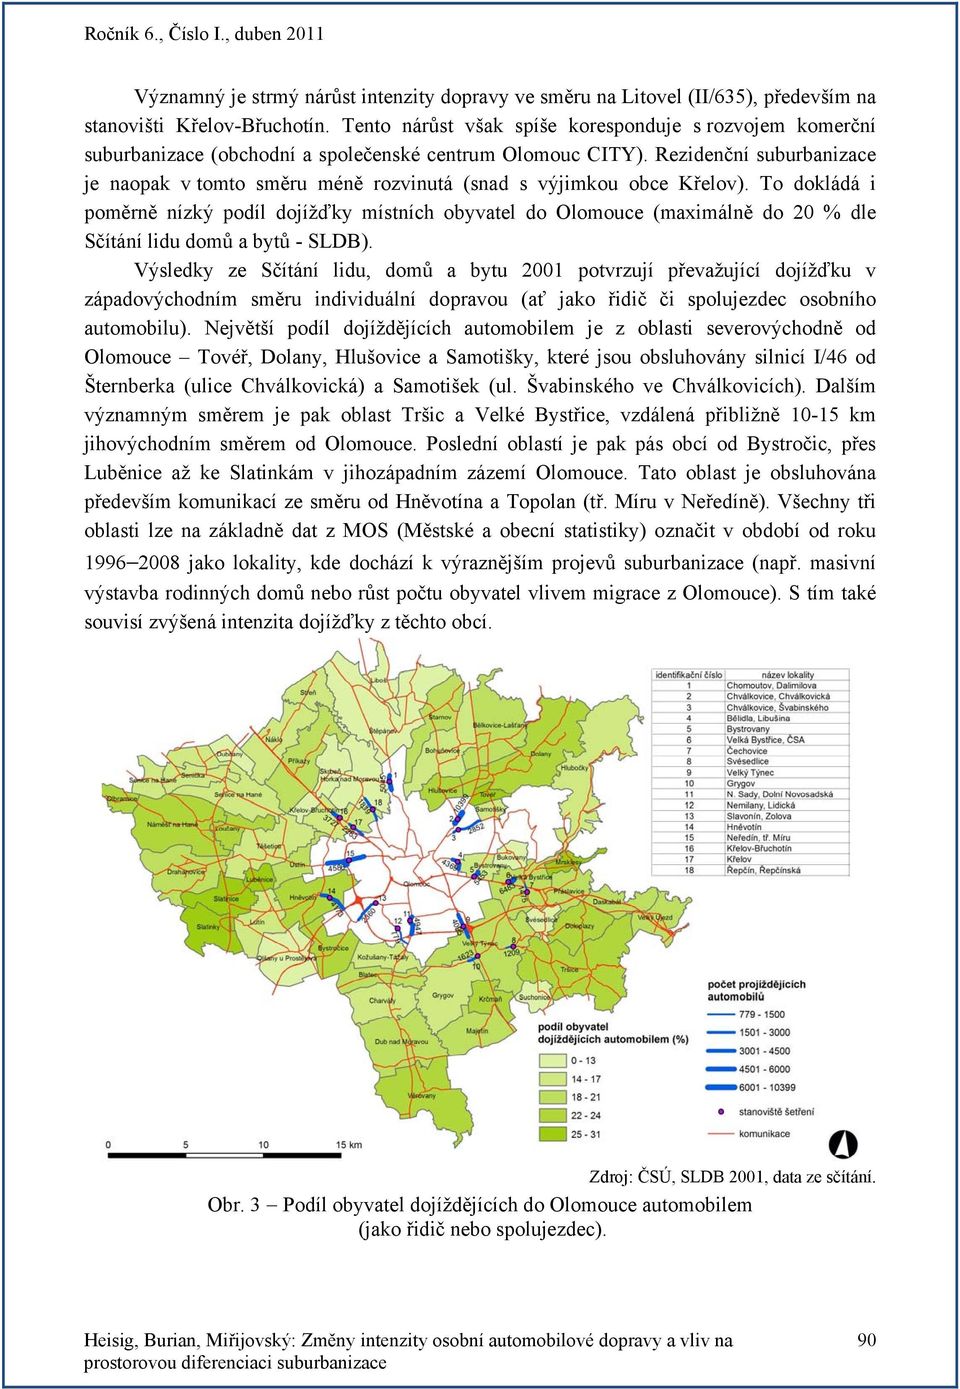 Rezidenční suburbanizace je naopak v tomto směru méně rozvinutá (snad s výjimkou obce Křelov).